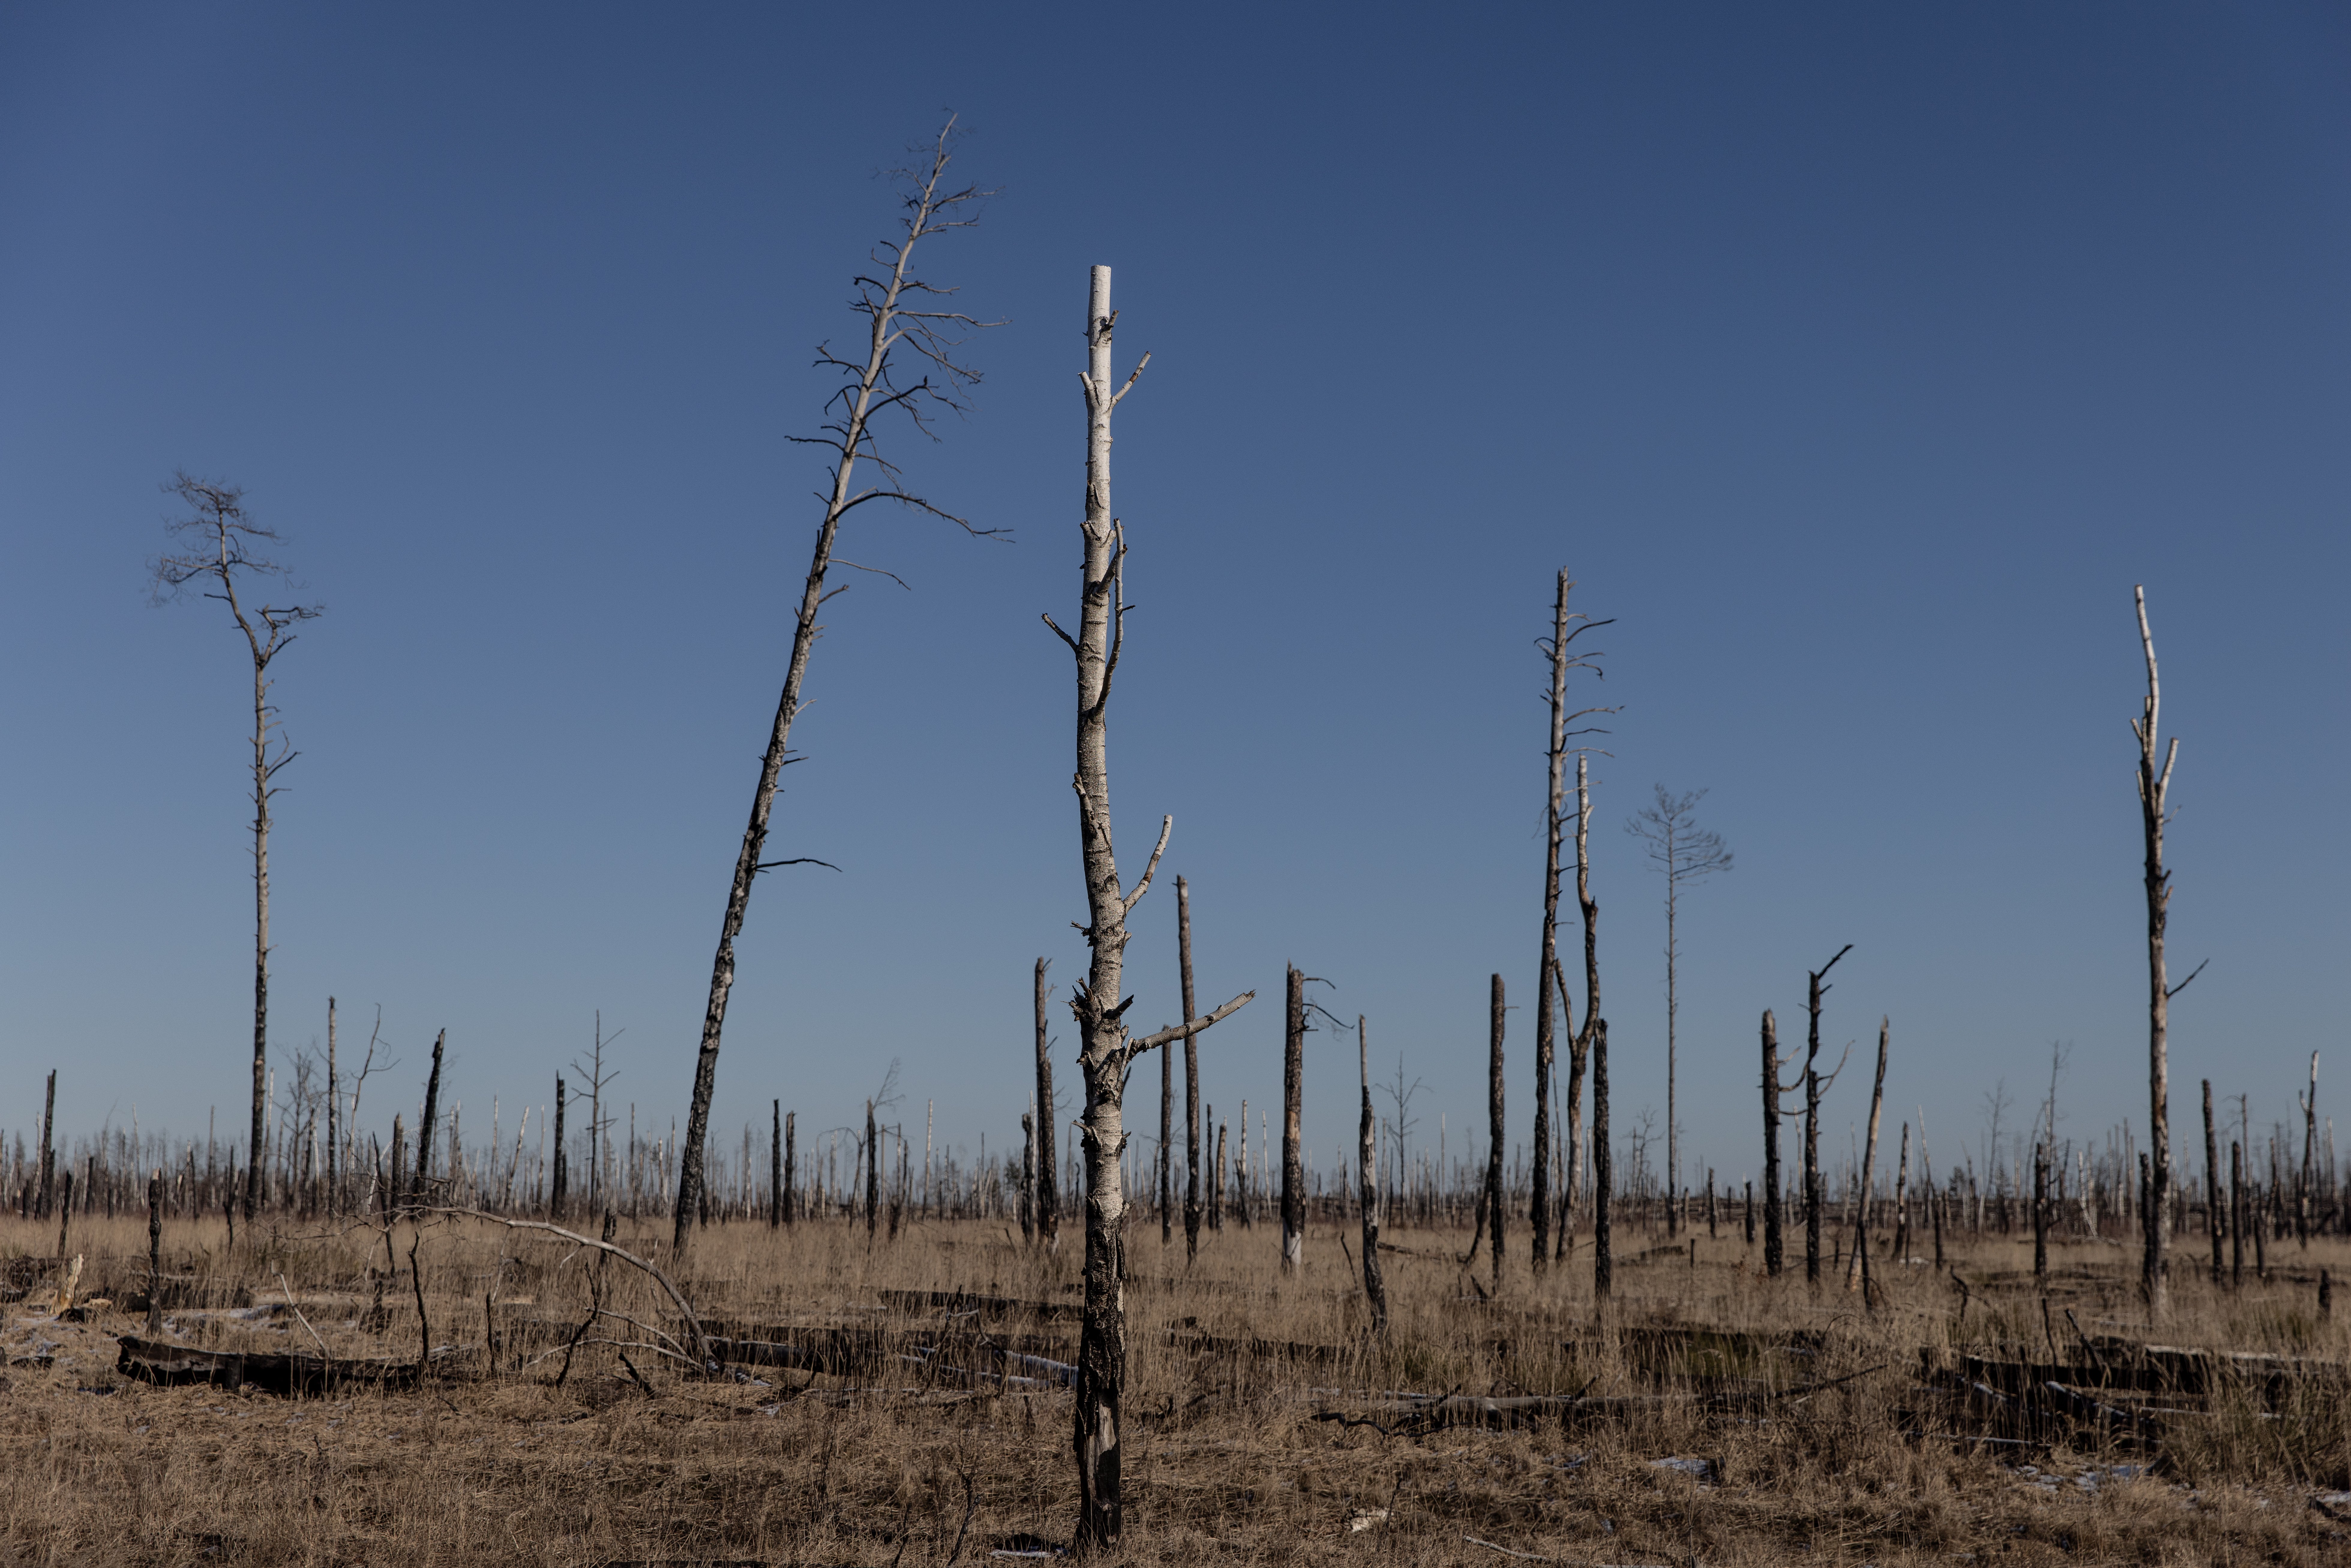 Árboles quemados en la zona de Chernóbil, cerca de la frontera entre Ucrania y Bielorrusia, el 13 de febrero, días antes de la invasión rusa